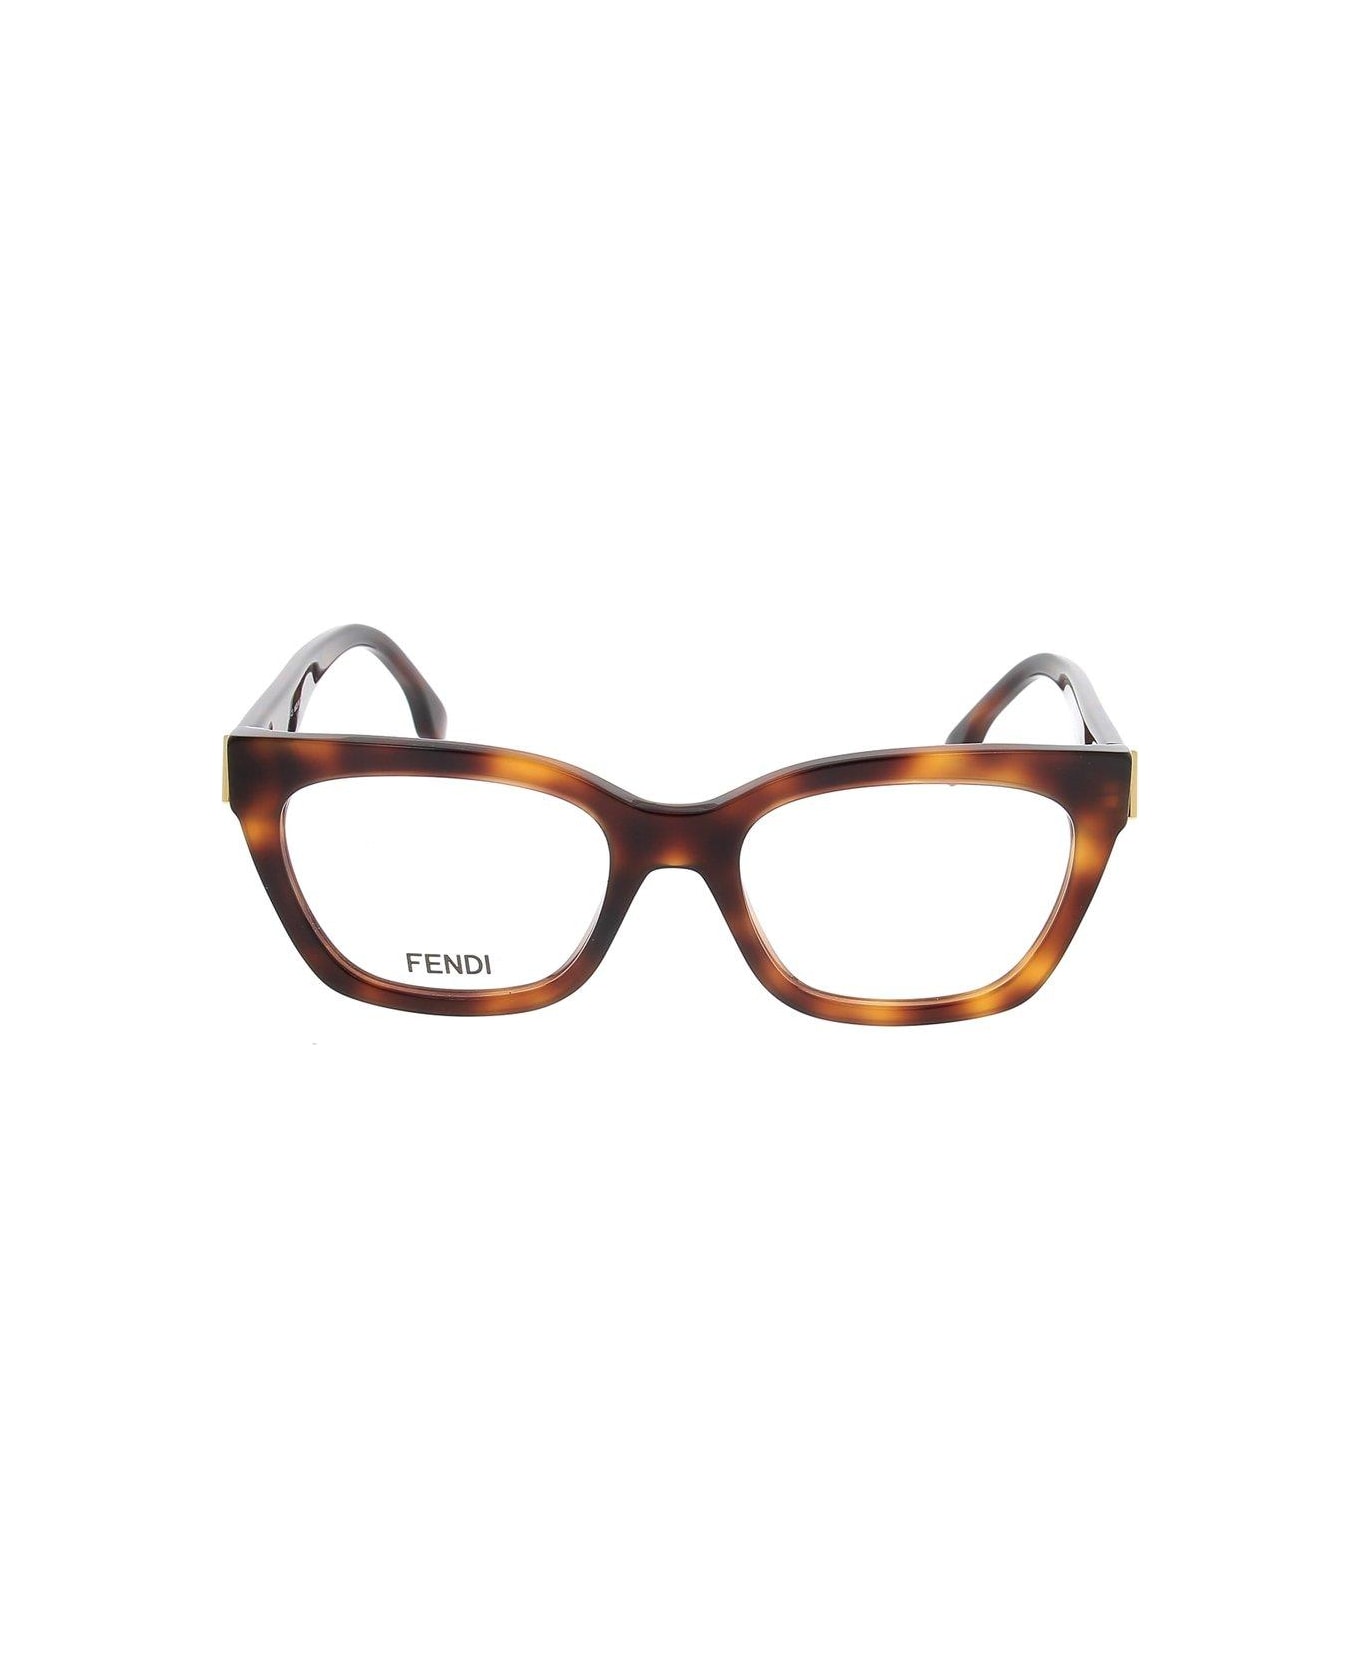 Fendi Eyewear Cat-eye Frame Glasses - 053 アイウェア